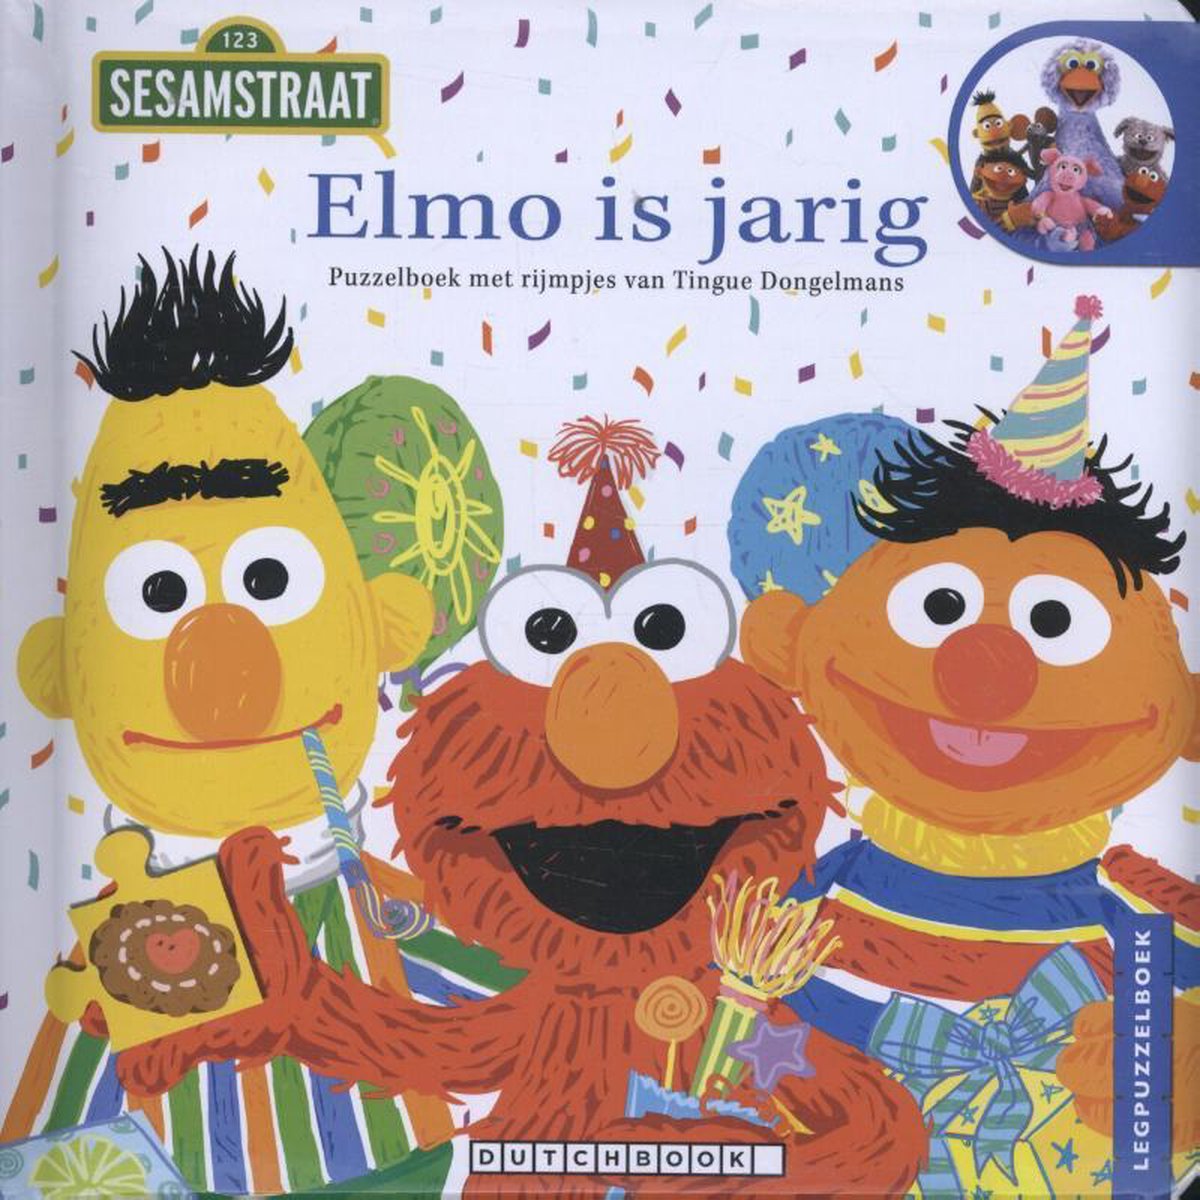 Sesamstraat - Elmo is jarig